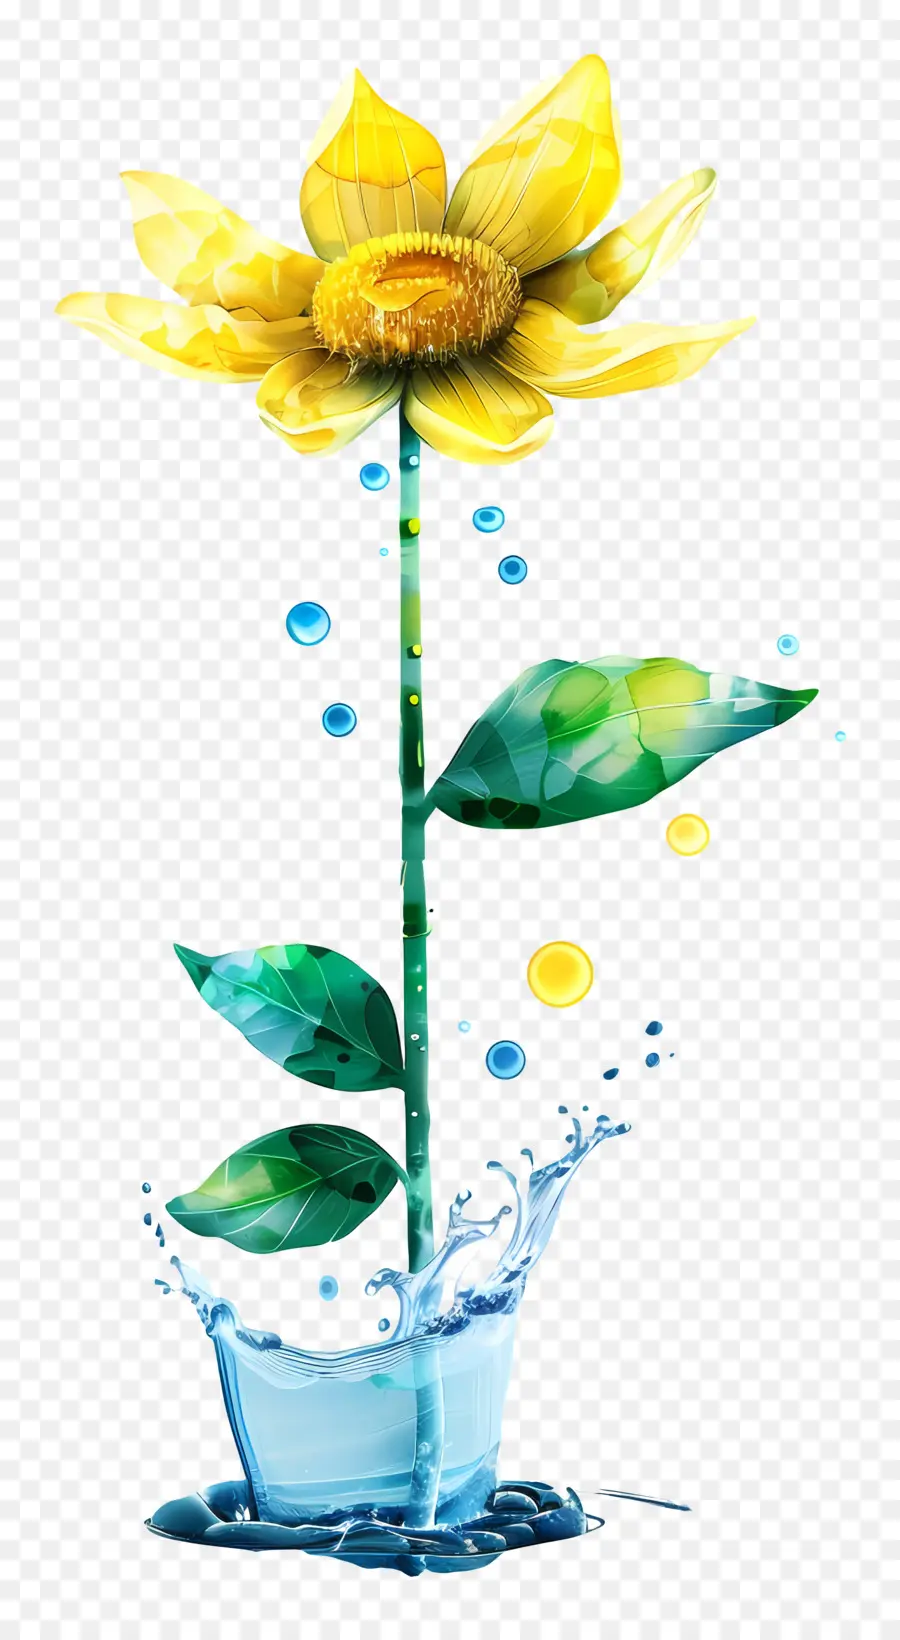 hướng dương - Hoa hướng dương nở hoa trong chiếc bình đầy nước